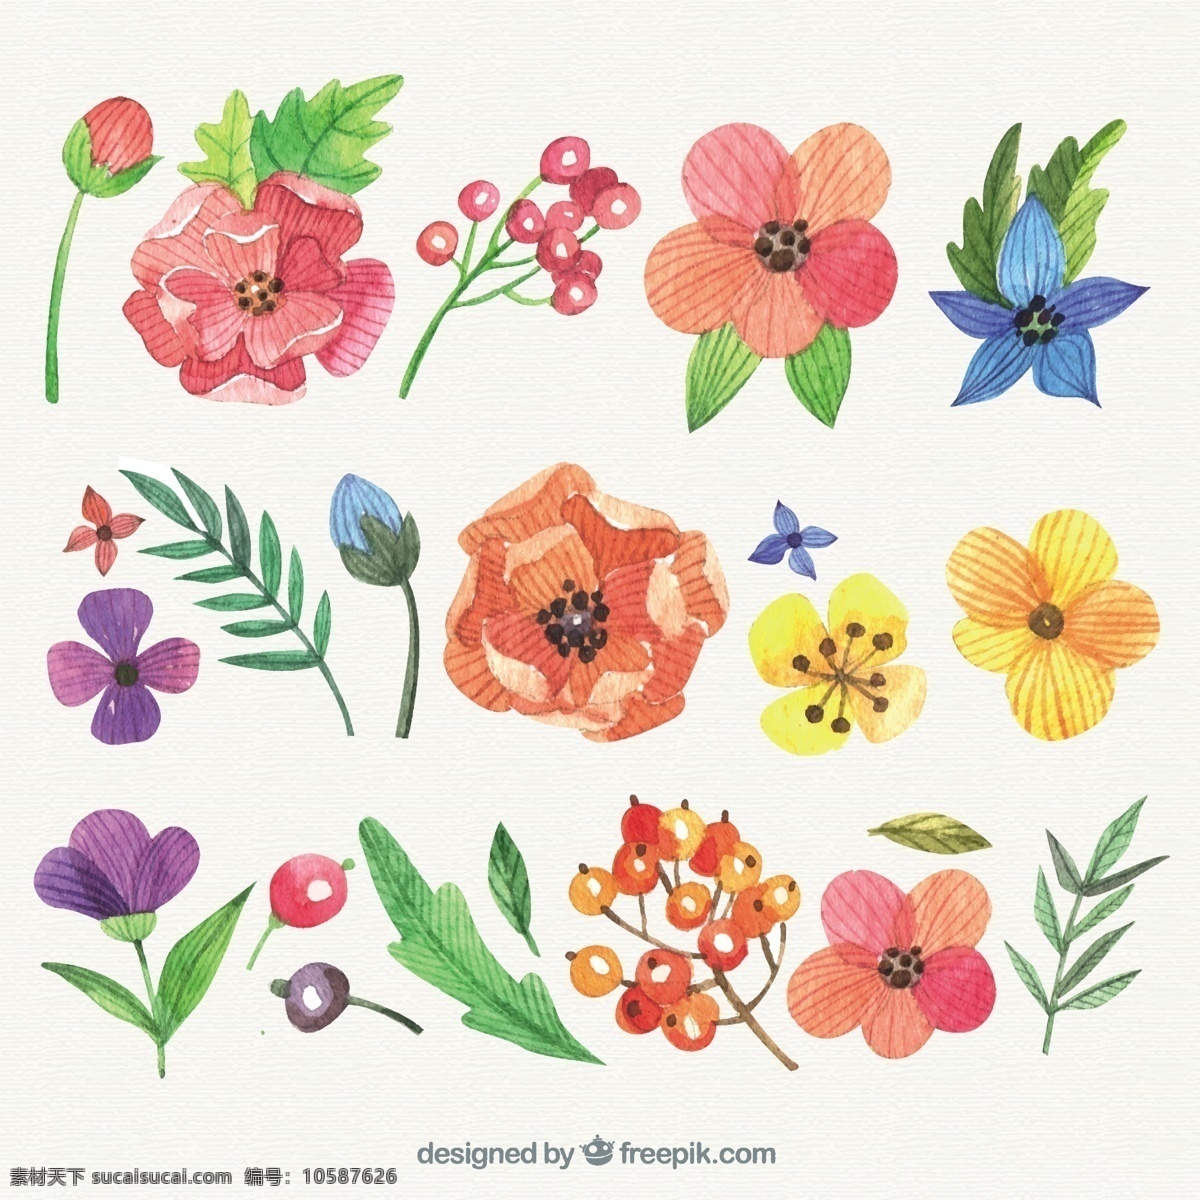 手绘花卉品种 花卉 水彩 鲜花 自然 油漆 天然 手工 手绘 品种繁多 植被